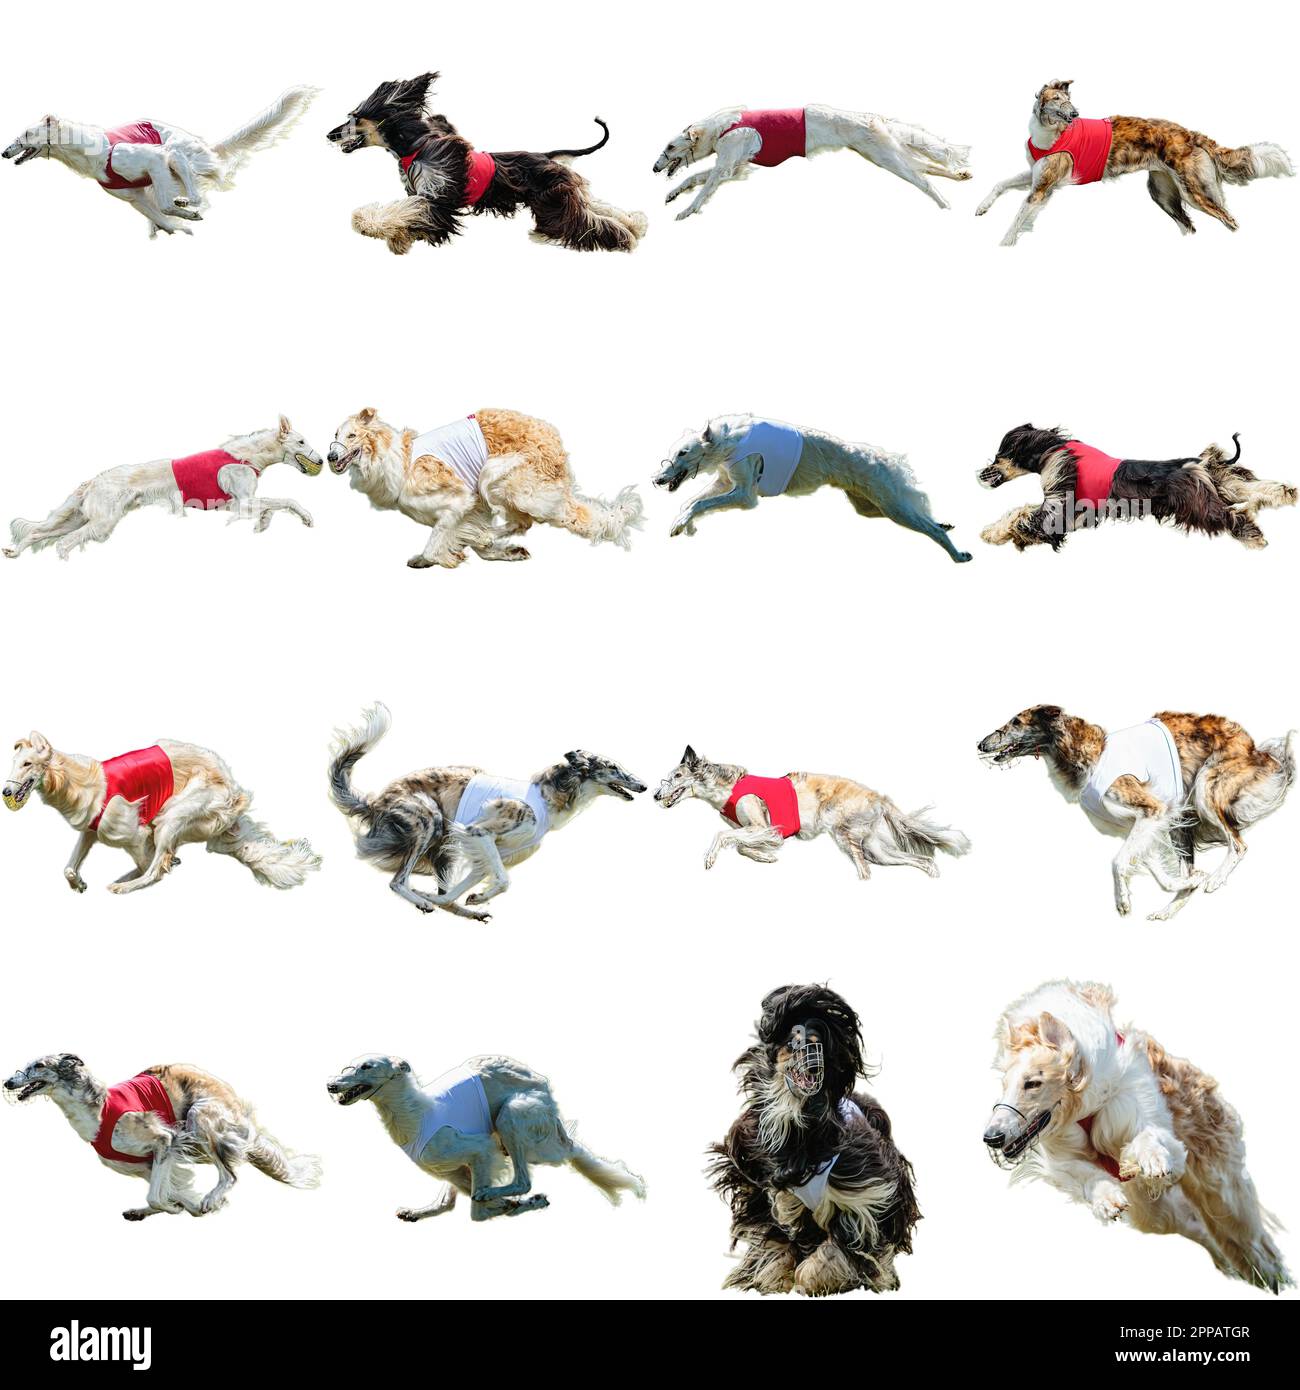 Borzoi cane collage correre cattura caccia dritto su fotocamera isolato su sfondo bianco a piena velocità in concorrenza Foto Stock